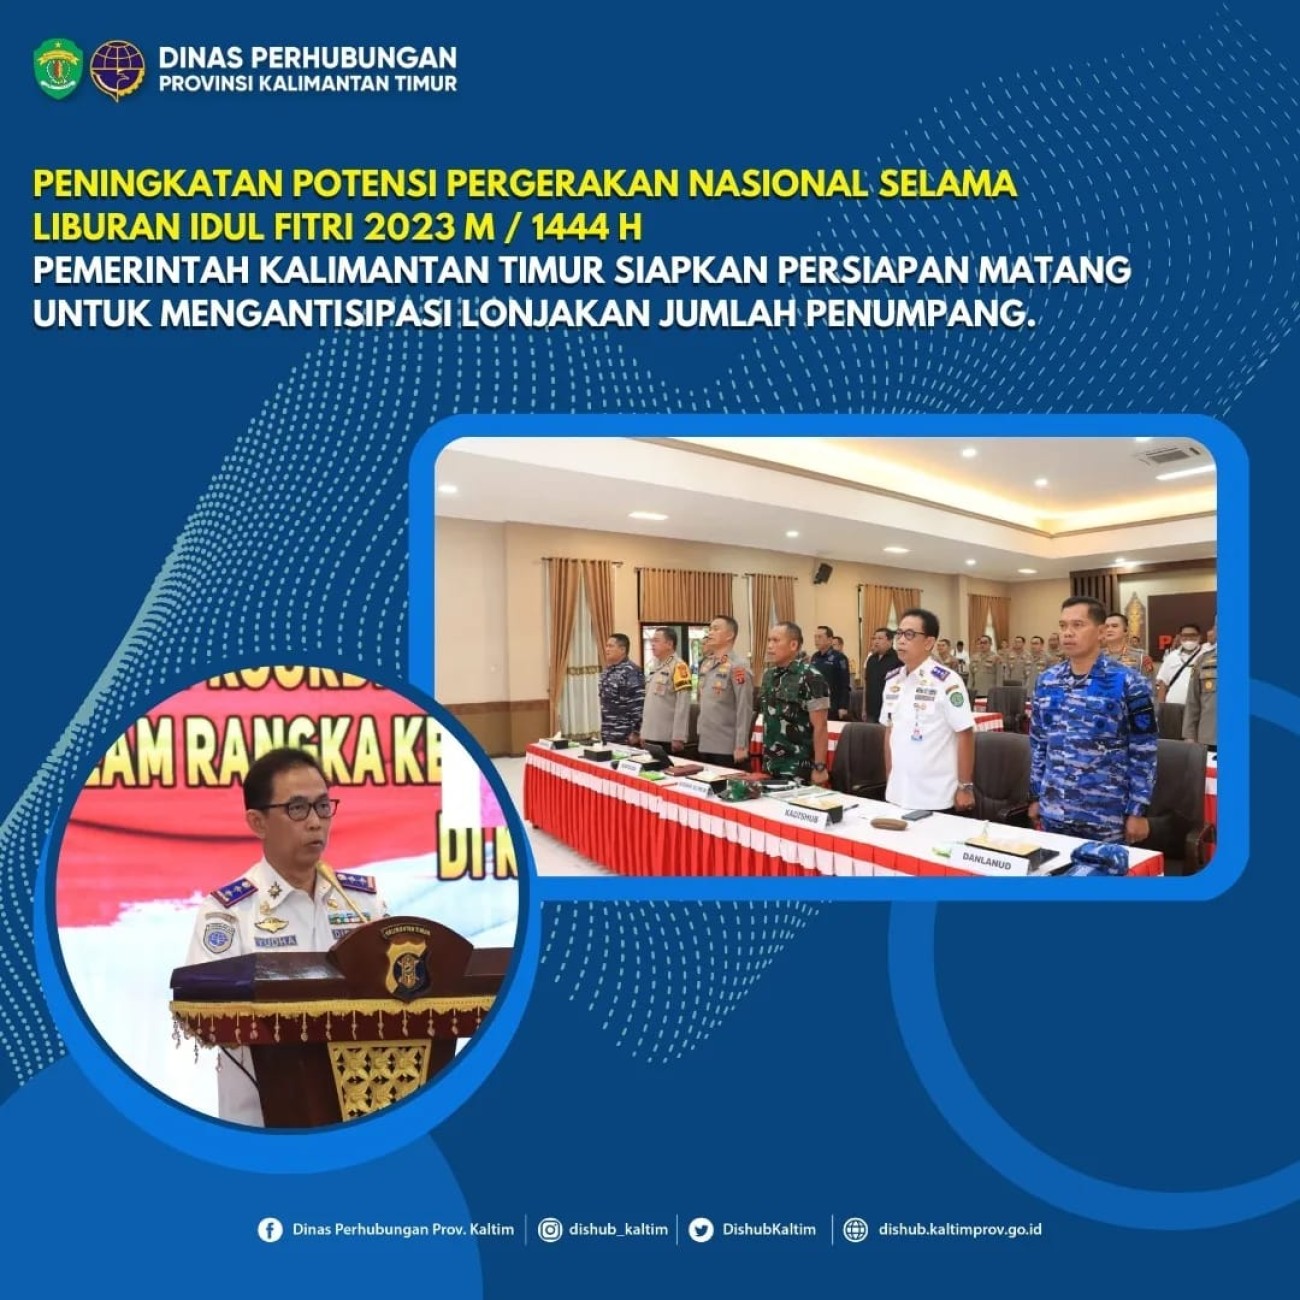 Peningkatan Potensi Pergerakan Nasional selama Liburan Idul Fitri 2023 M/1444 H, Pemerintah Kalimantan Timur Siapkan Persiapan Matang untuk Mengantisipasi Lonjakan Jumlah Penumpang